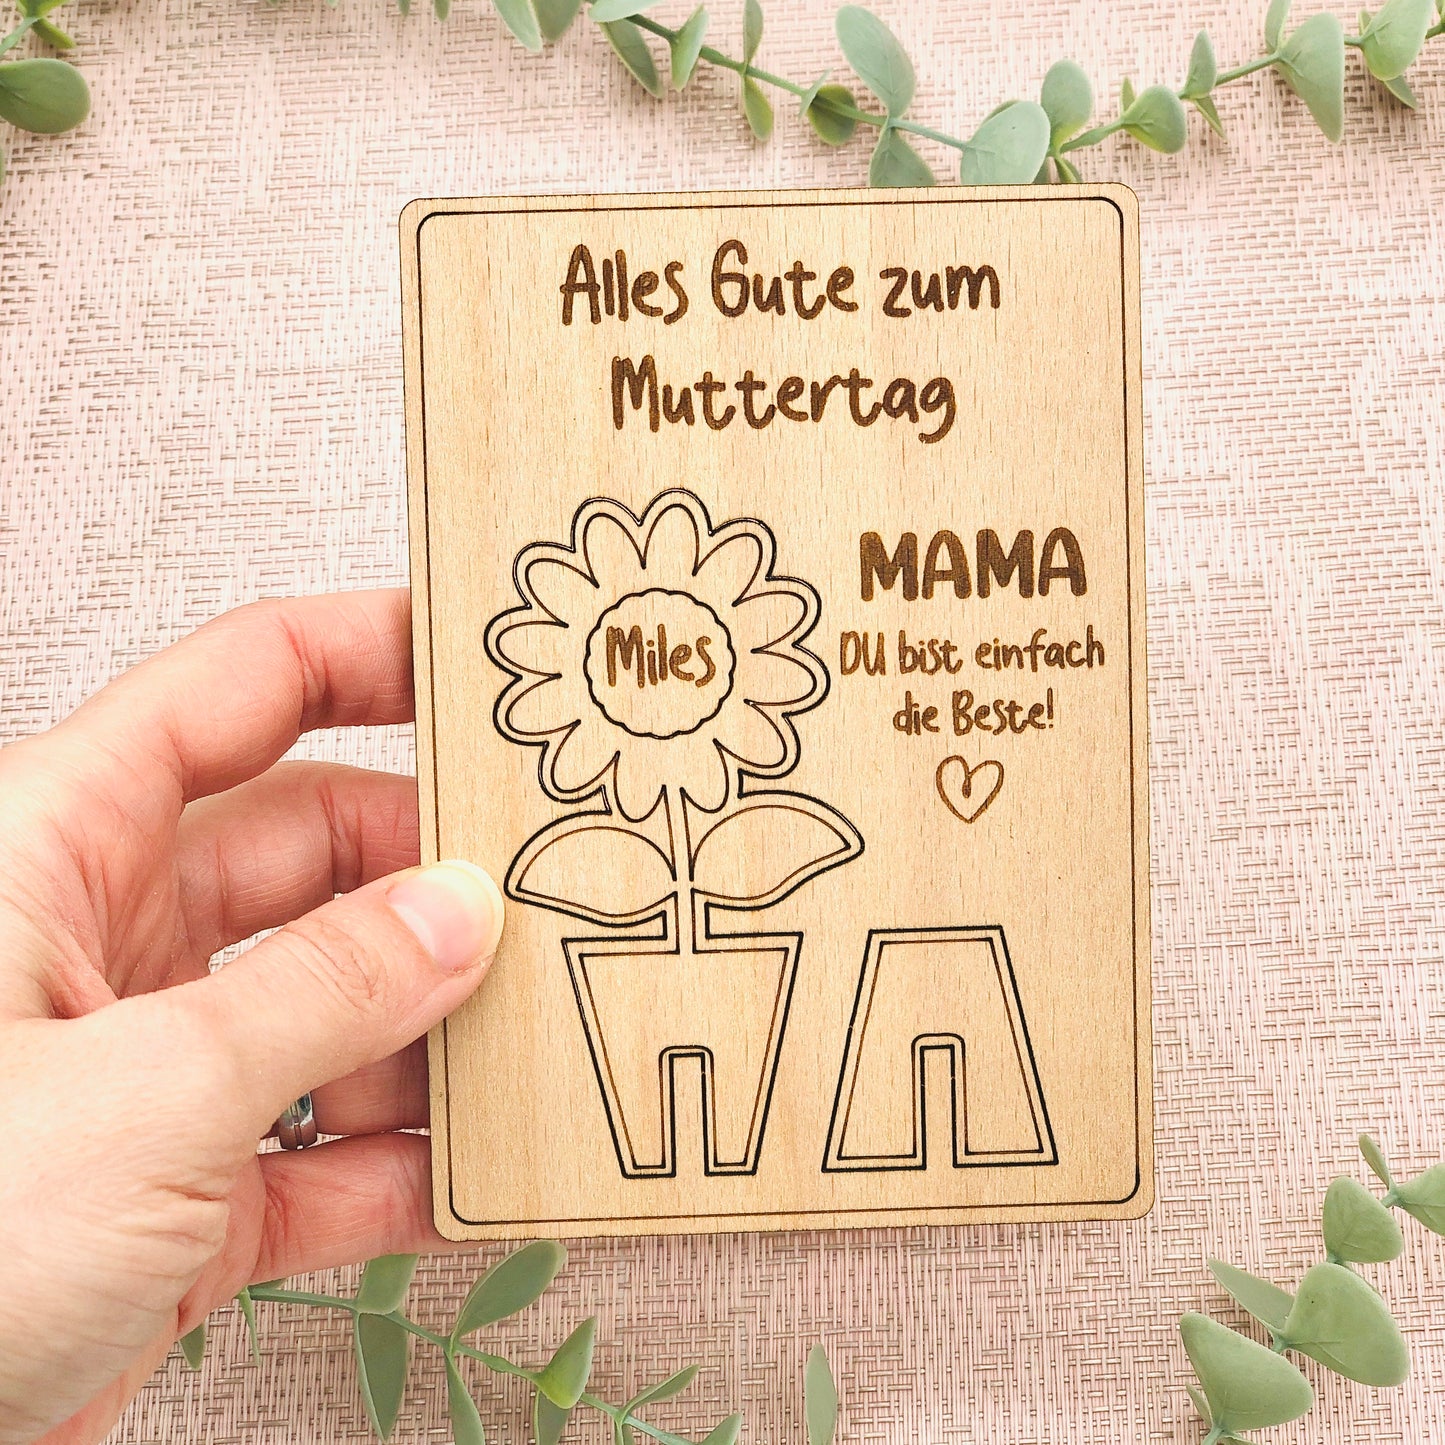 Grußkarte "Alles Gute zum Muttertag" aus Holz